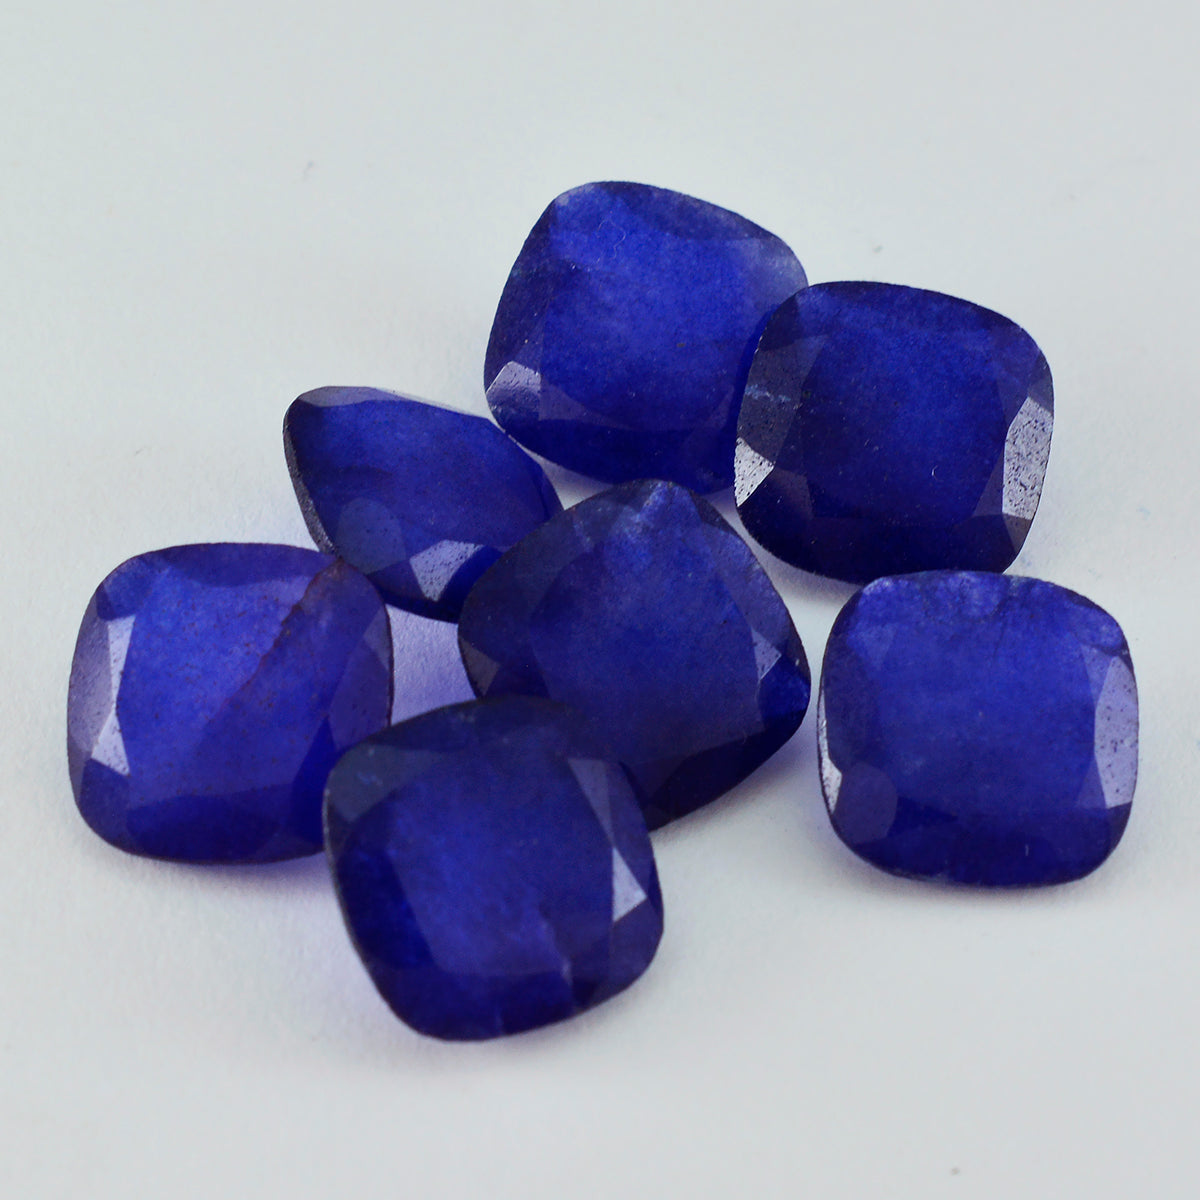 Riyogems 1 Stück echter blauer Jaspis, facettiert, 8 x 8 mm, Kissenform, AAA-Qualität, lose Edelsteine